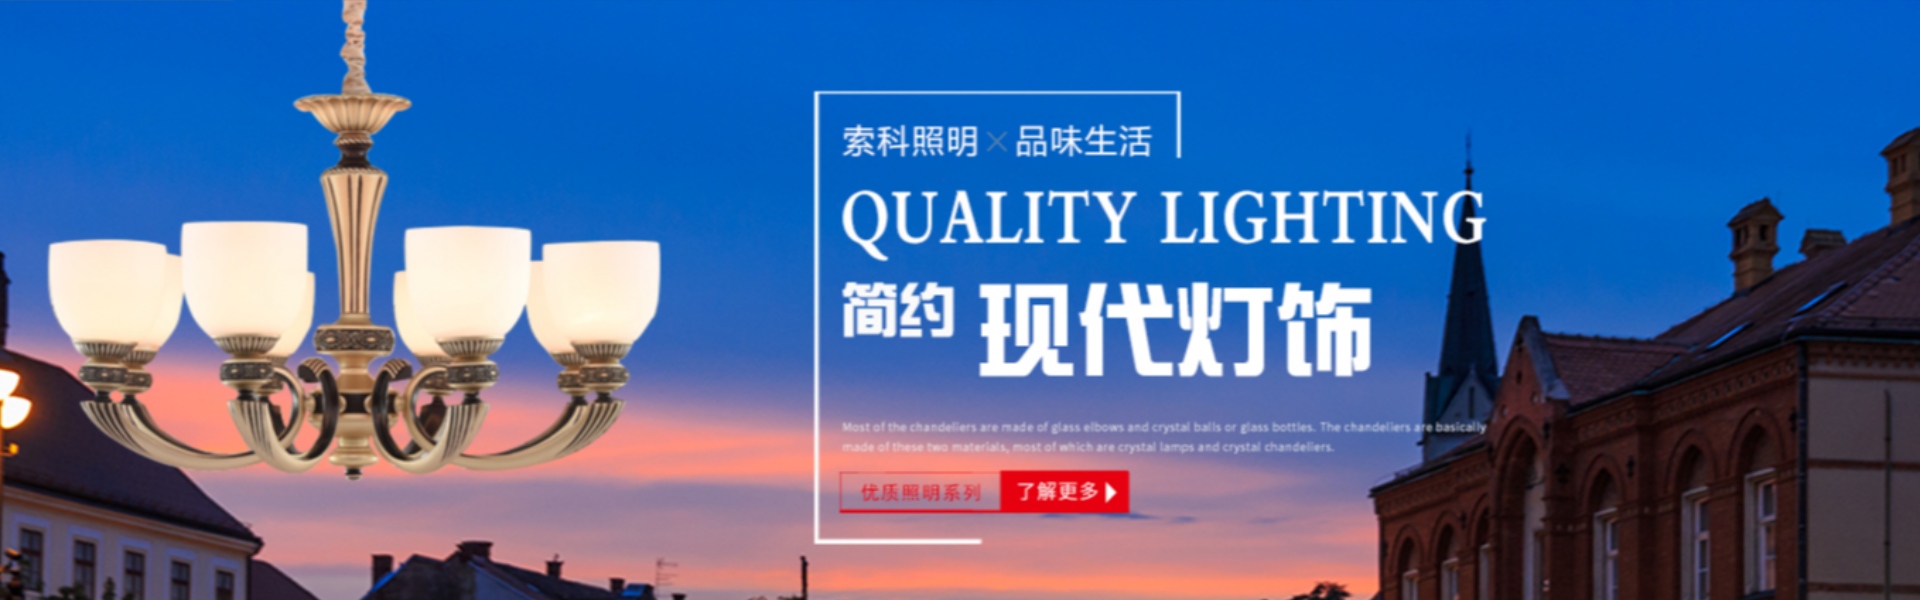 éclairage domestique, éclairage extérieur, éclairage solaire,Zhongshan Suoke Lighting Electric Co., Ltd.